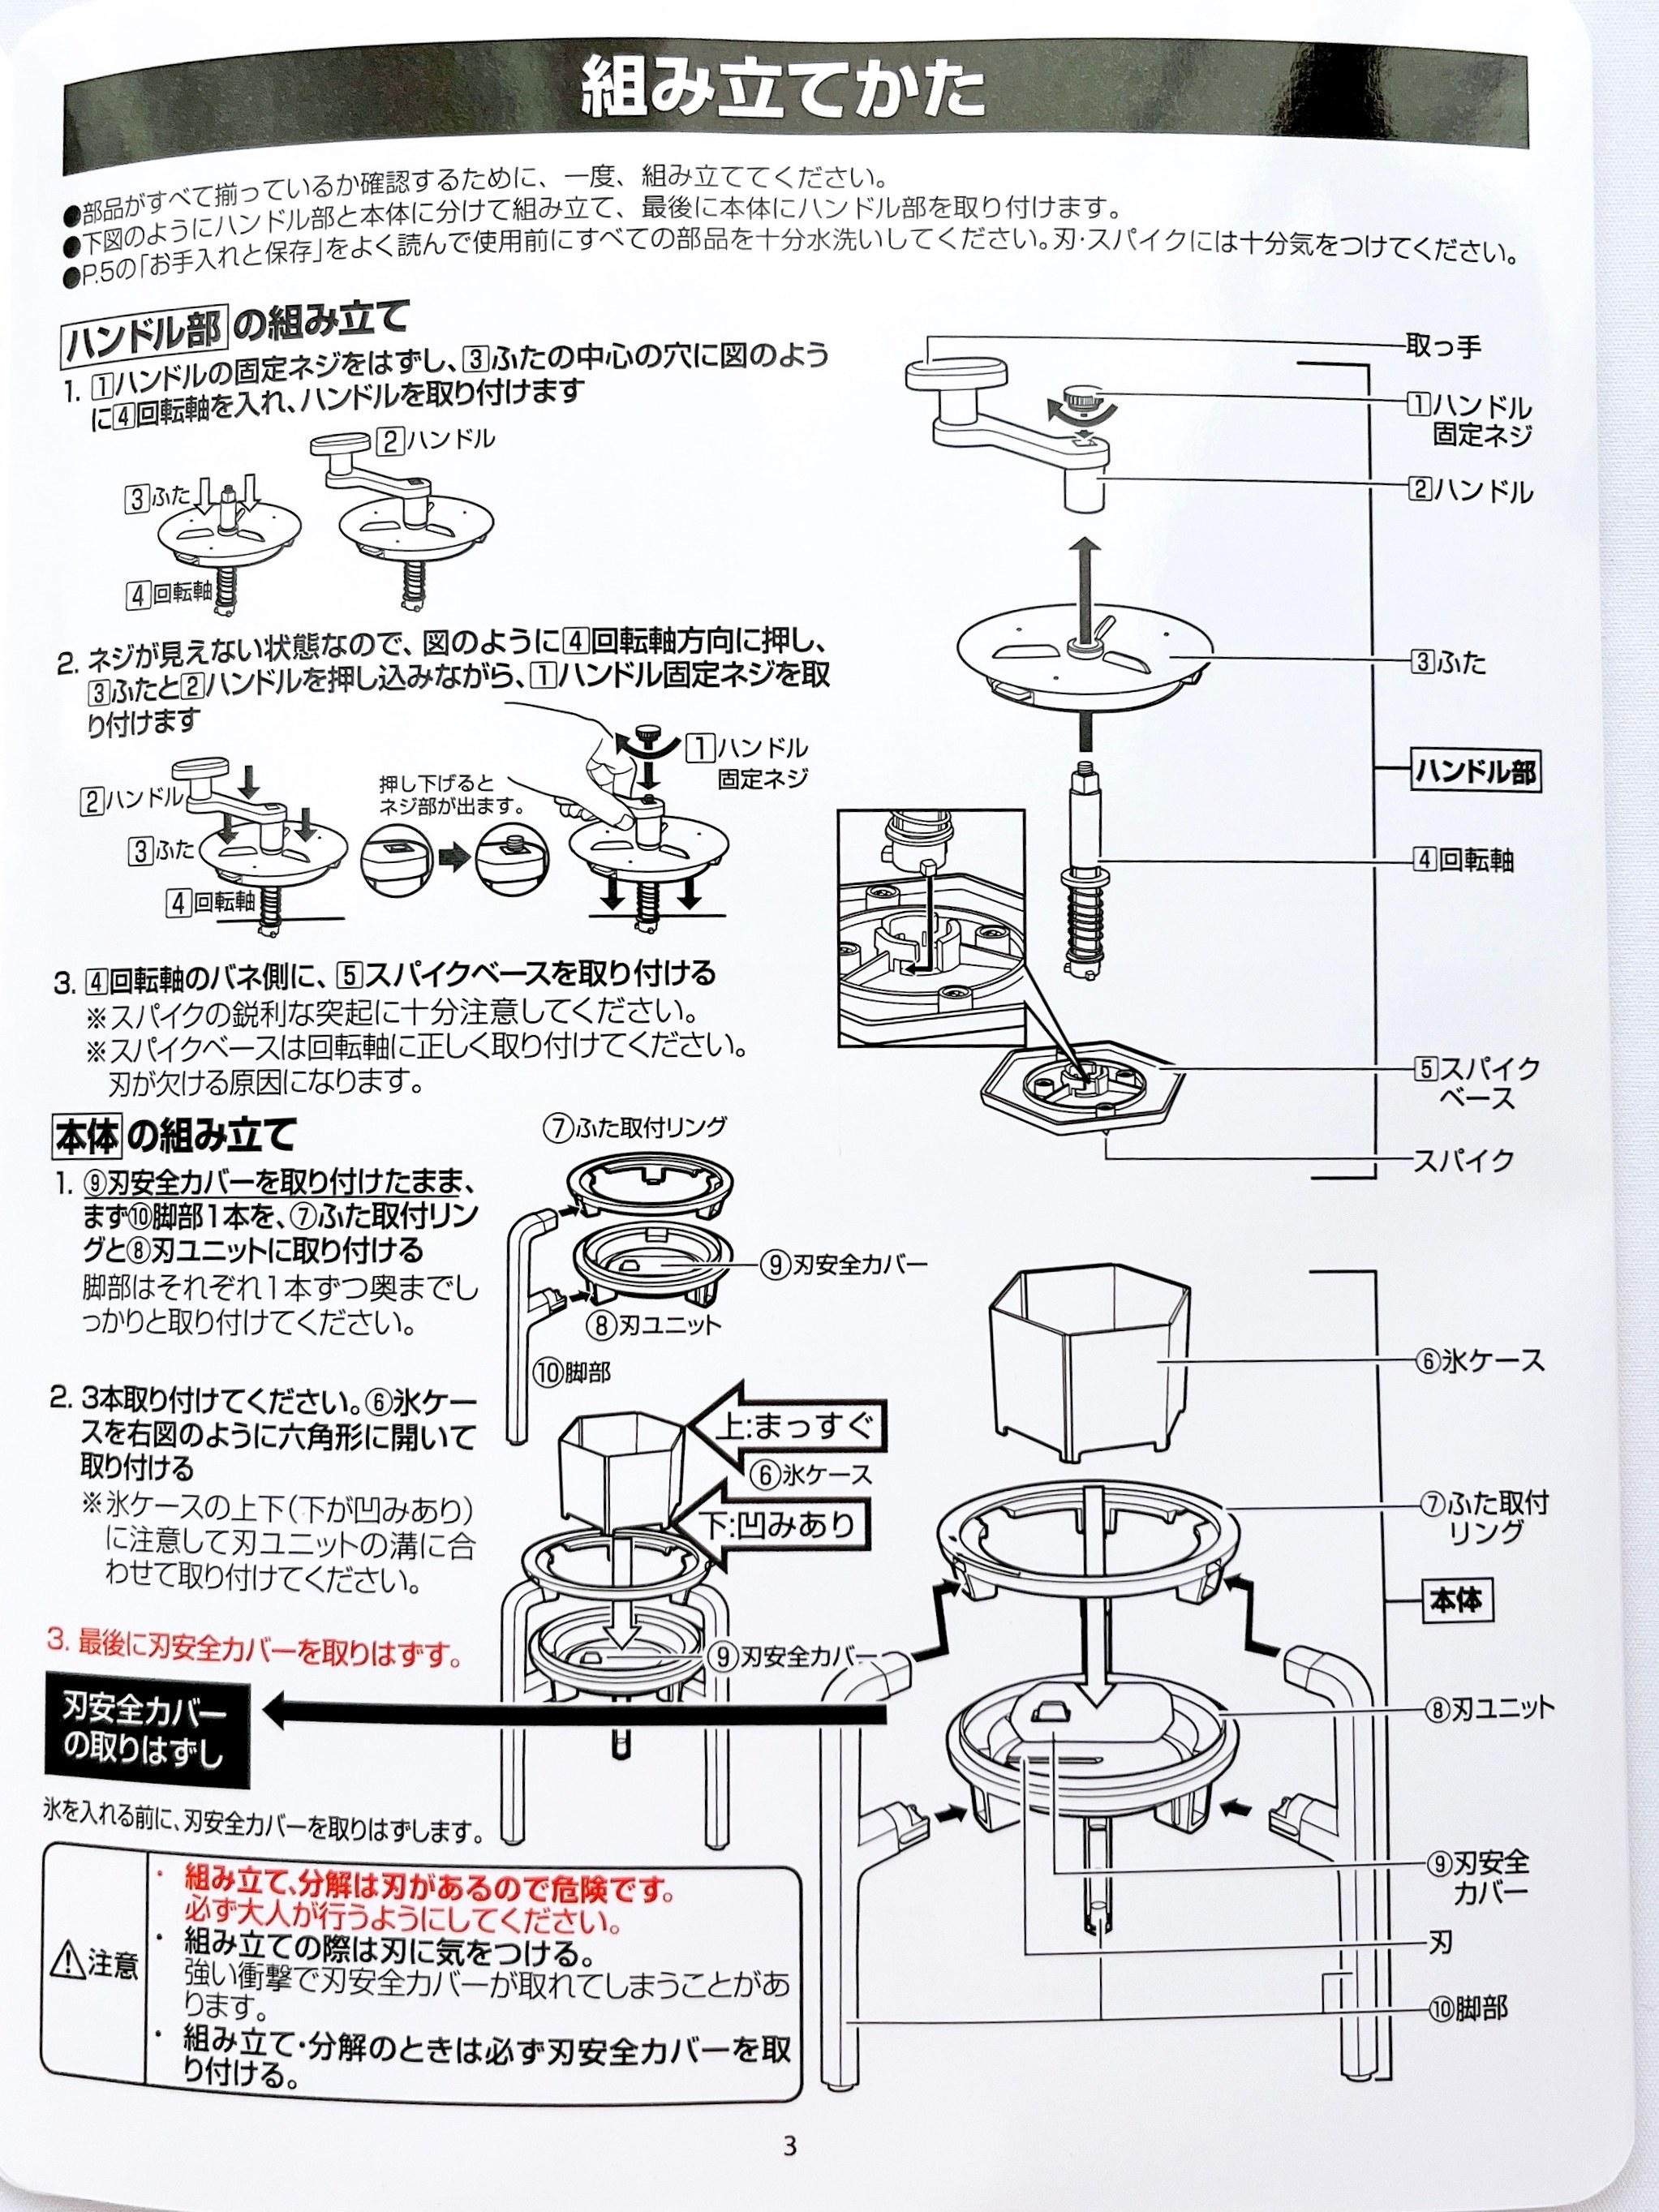 NITORI（ニトリ）のおすすめキッチンアイテム「収納を考えた手動式かき氷器」